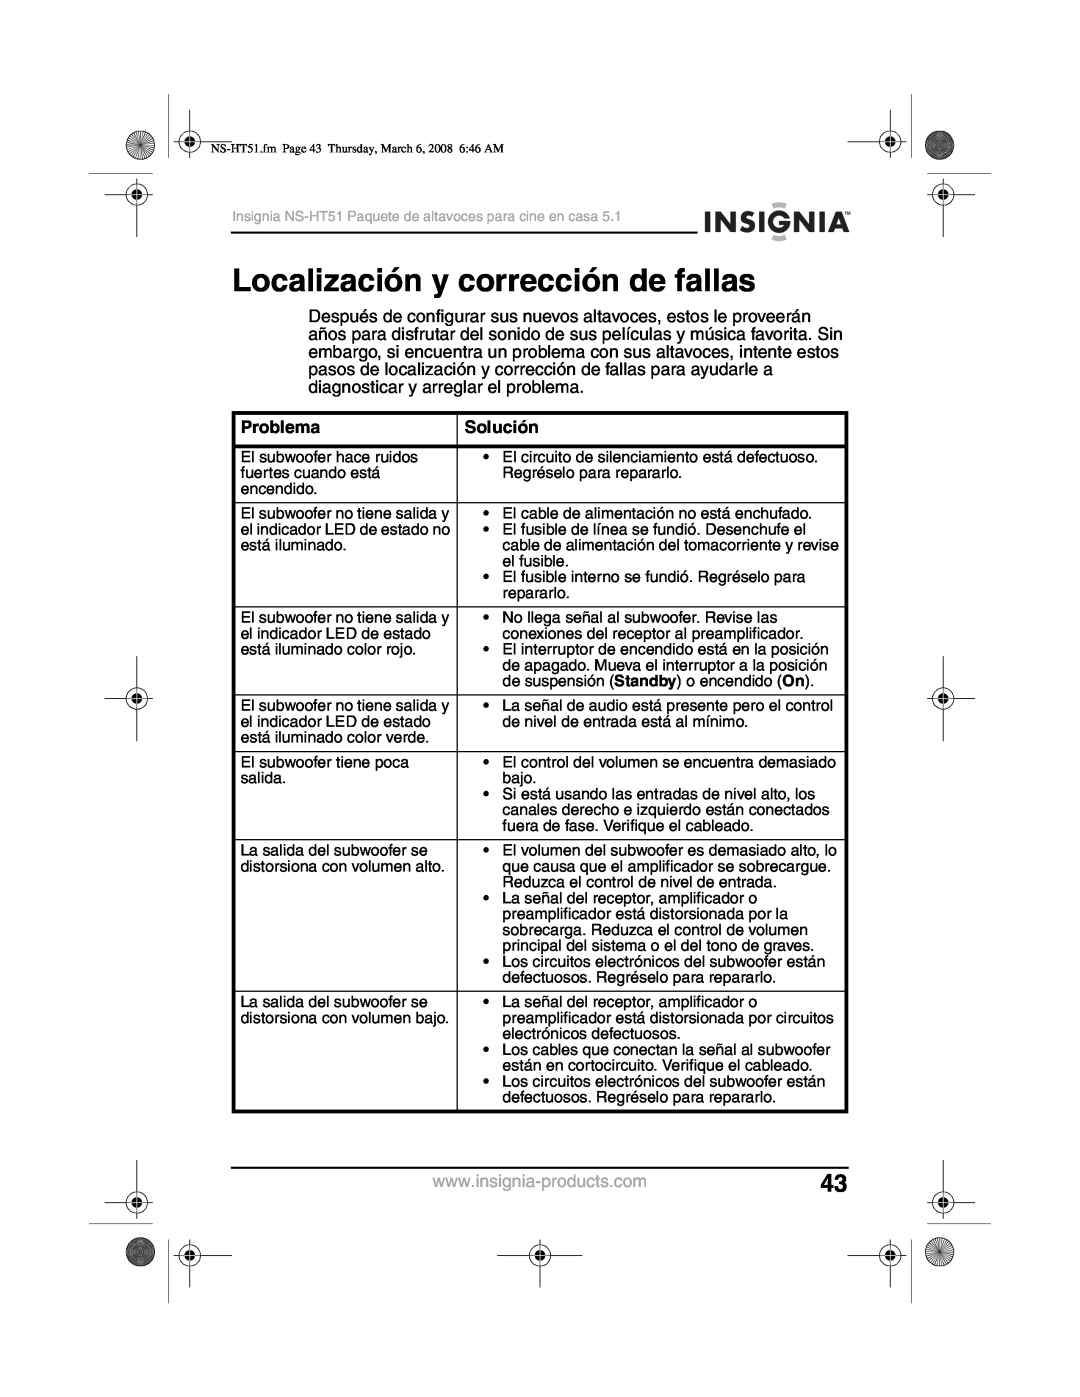 Insignia NS-HT51 manual Localización y corrección de fallas, Problema, Solución 